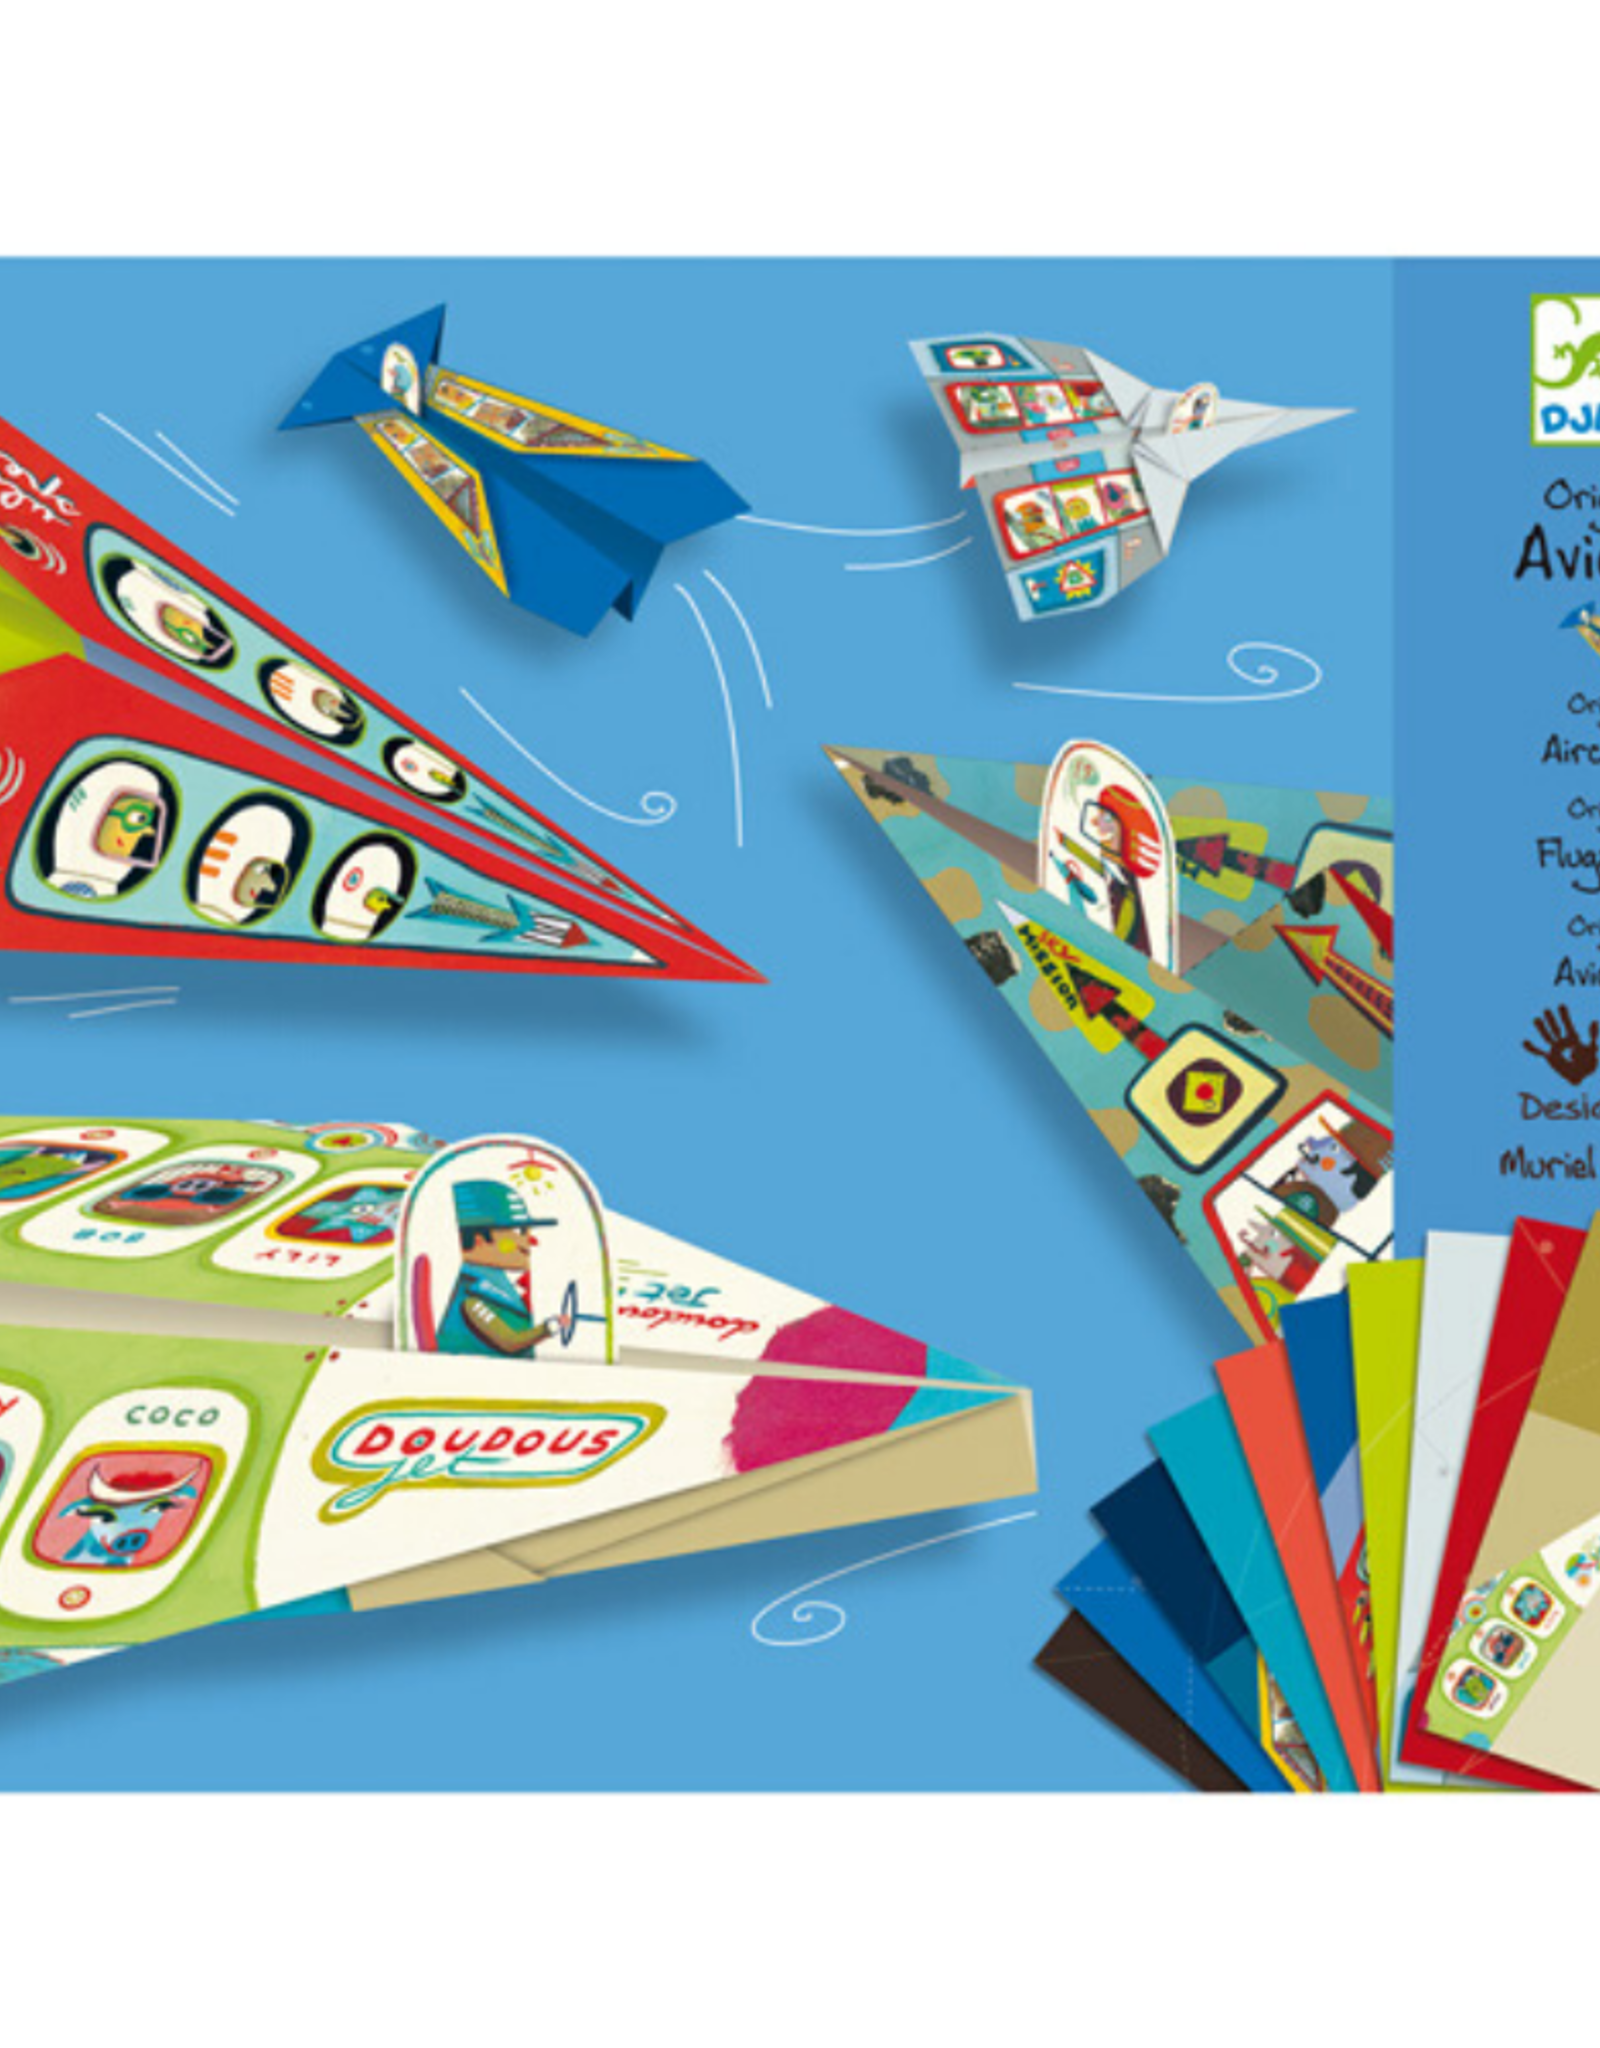 Djeco PG Origami: Planes